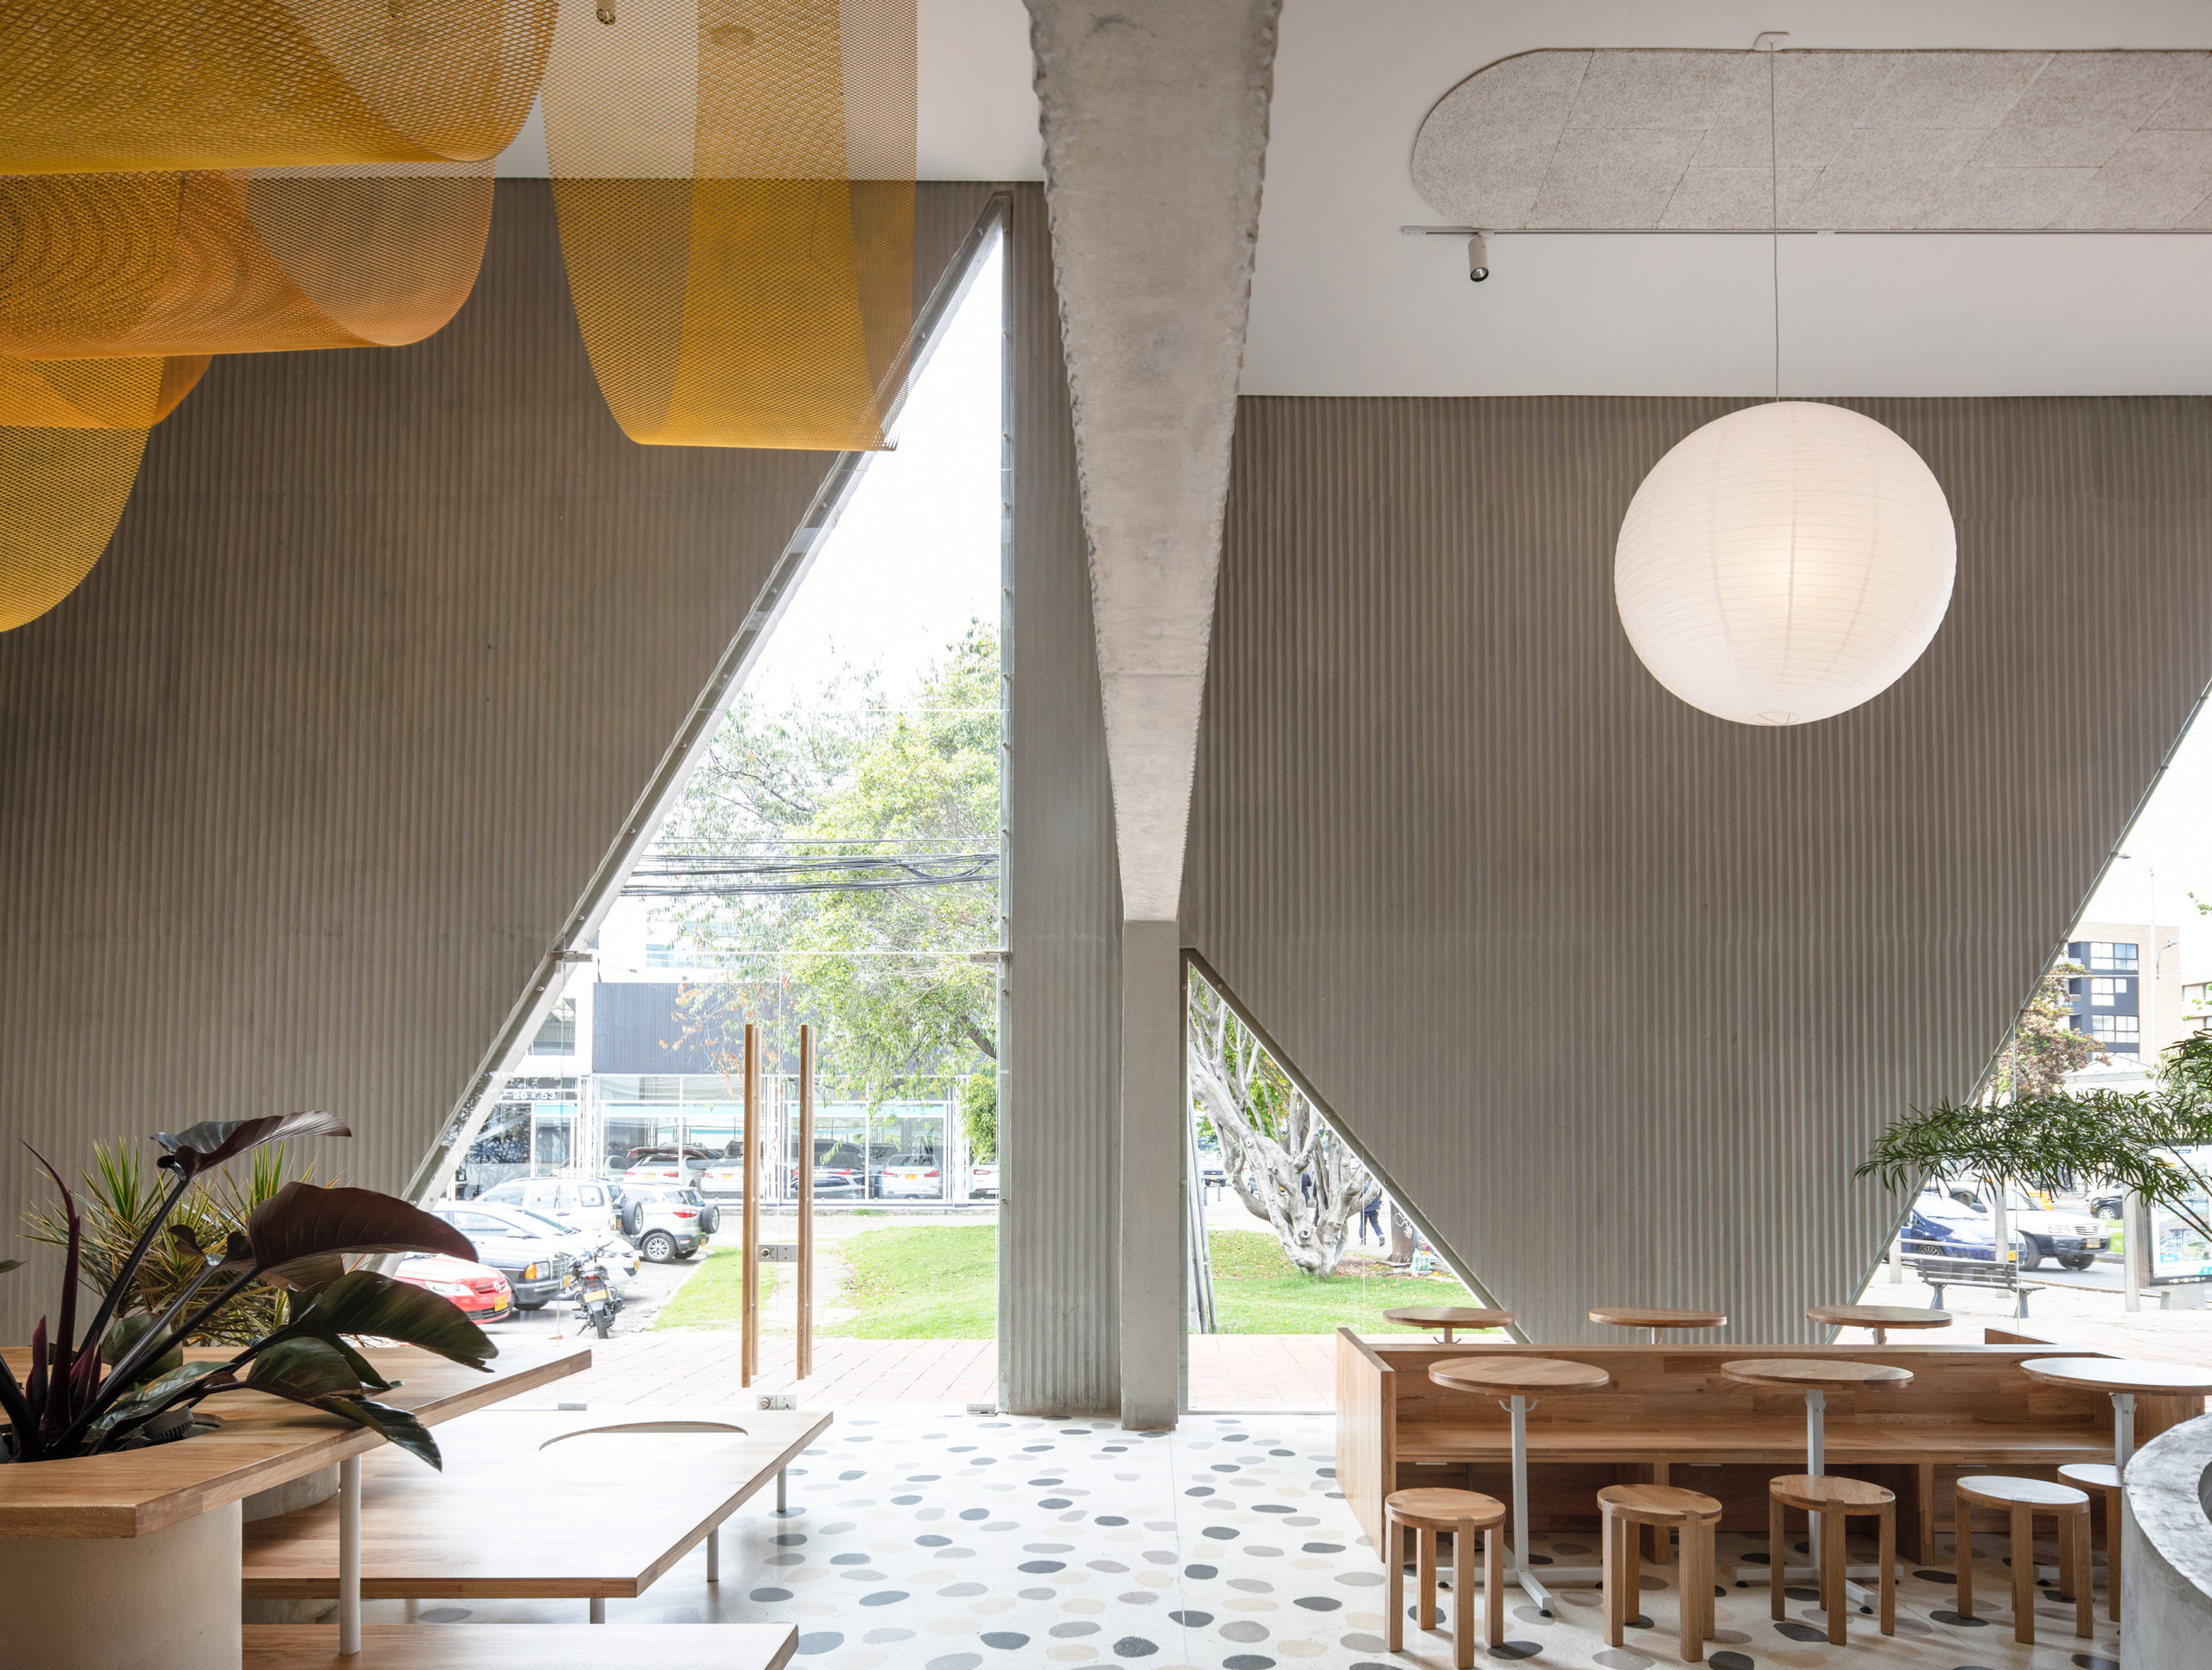 Architecture Honor Award: Masa Café & Bakery by Studio Cadena, in Bogota, Colombia. Photo: Naho Kubota.